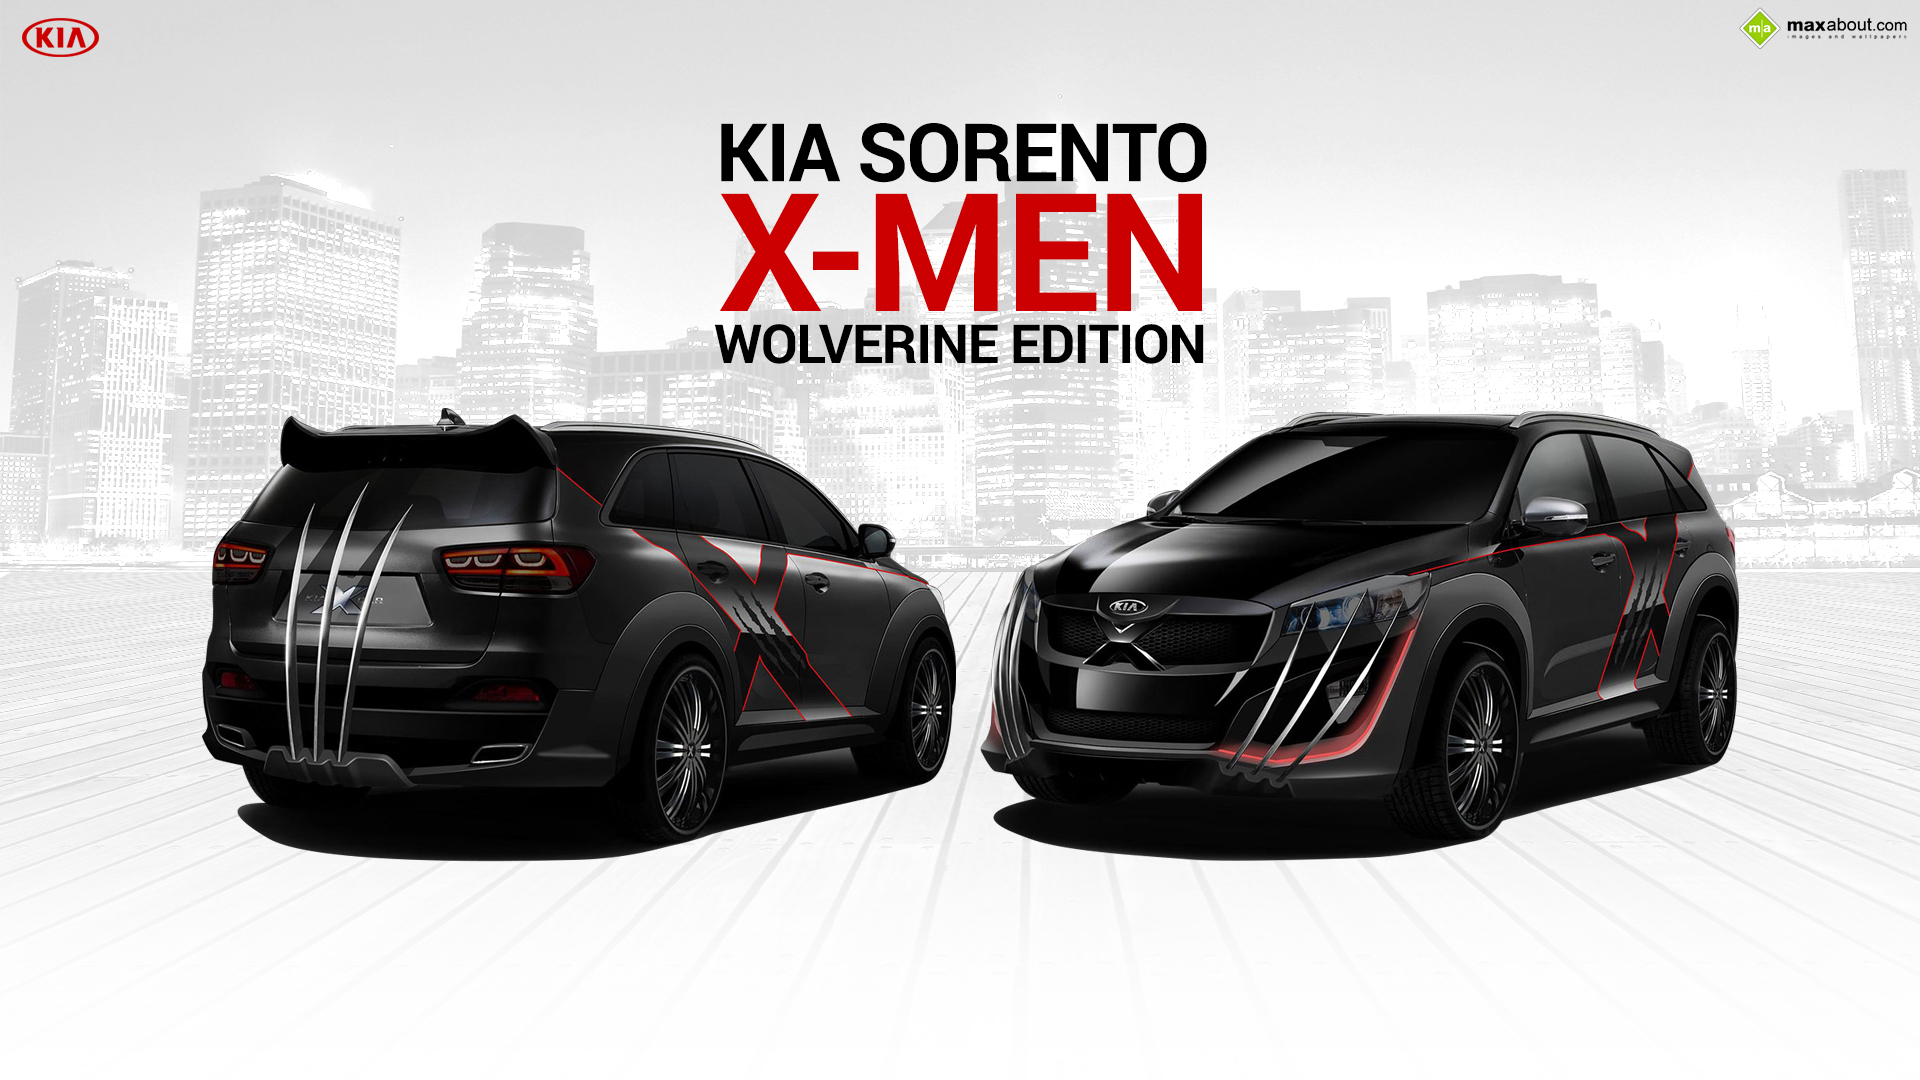 Kia Sorento X-Men Wolverine Edition.jpg